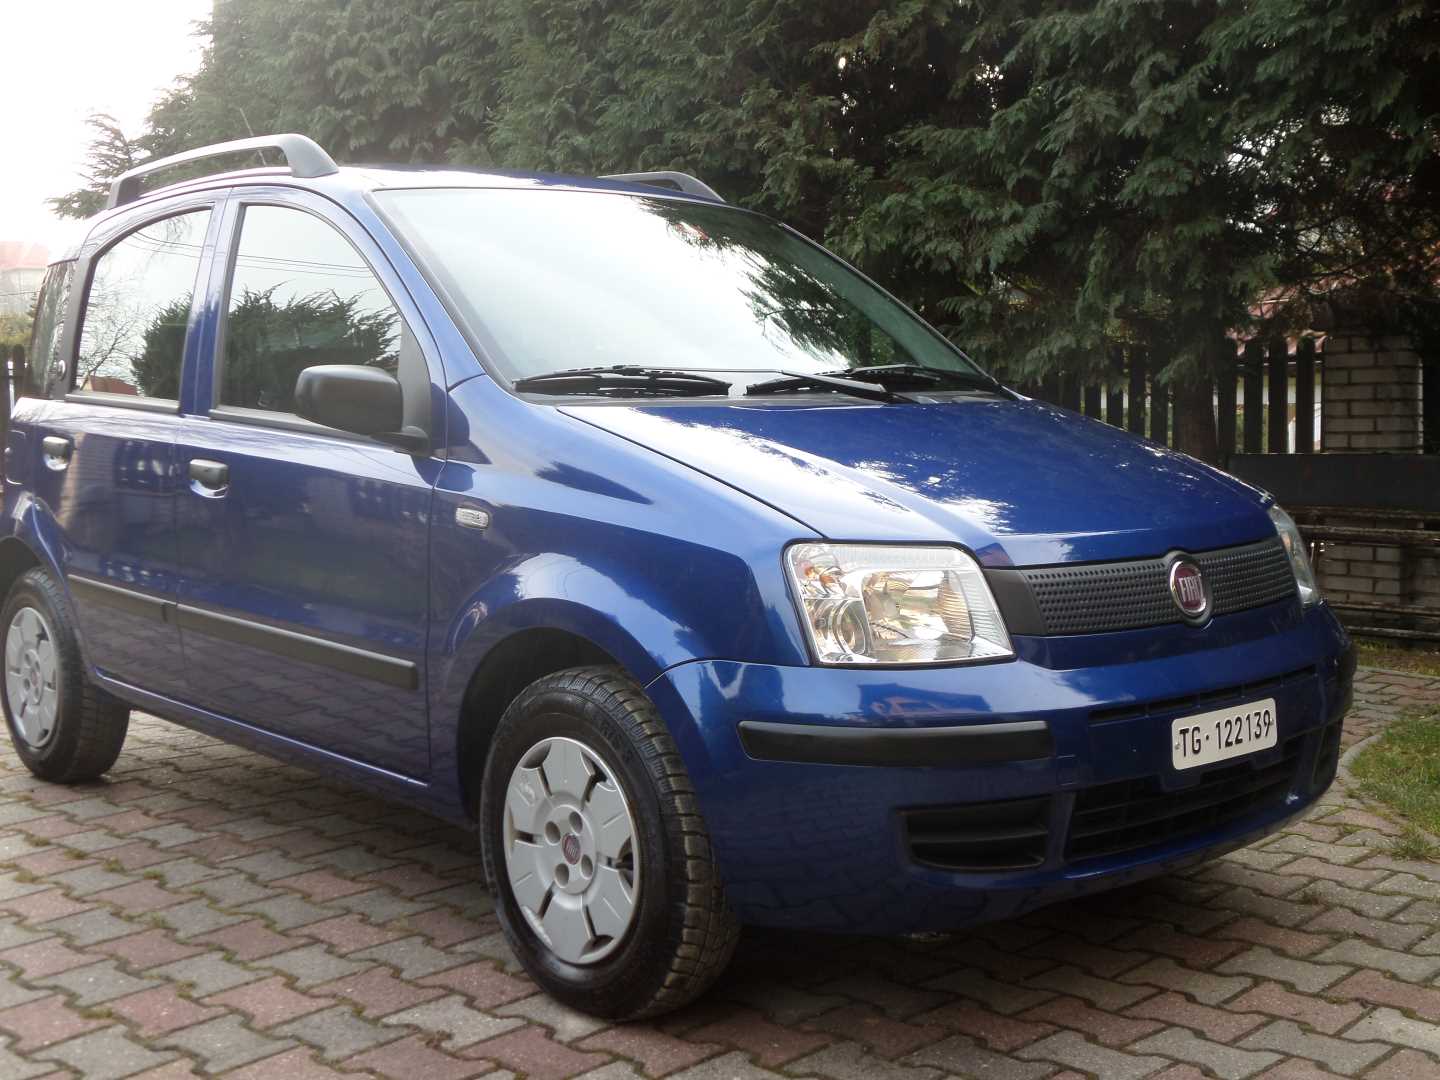 Fiat Panda 2008 1.1 54 KM